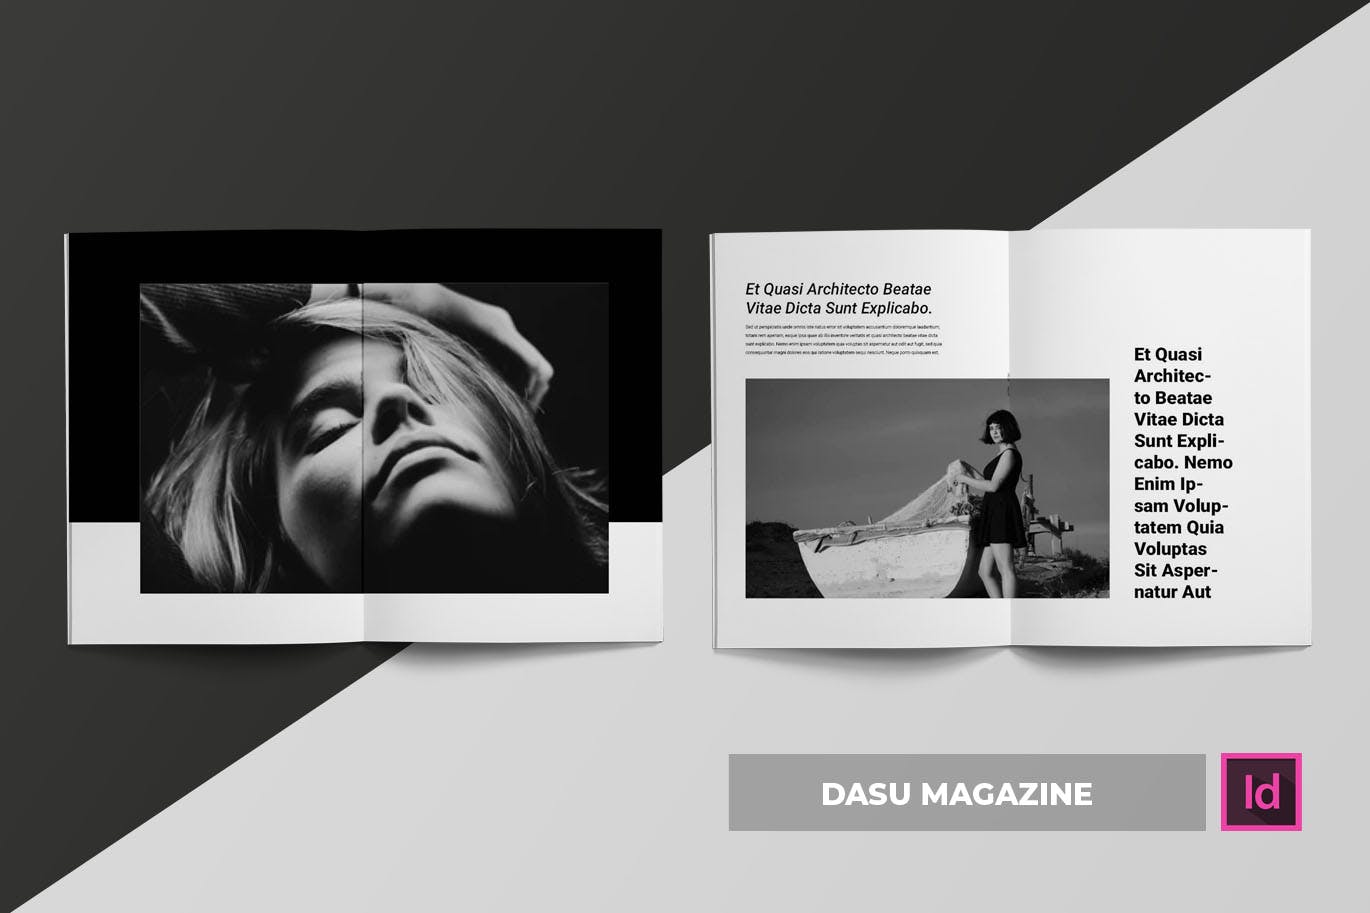 摄影艺术/时装设计主题大洋岛精选杂志排版设计模板 Dasu | Magazine Template插图1